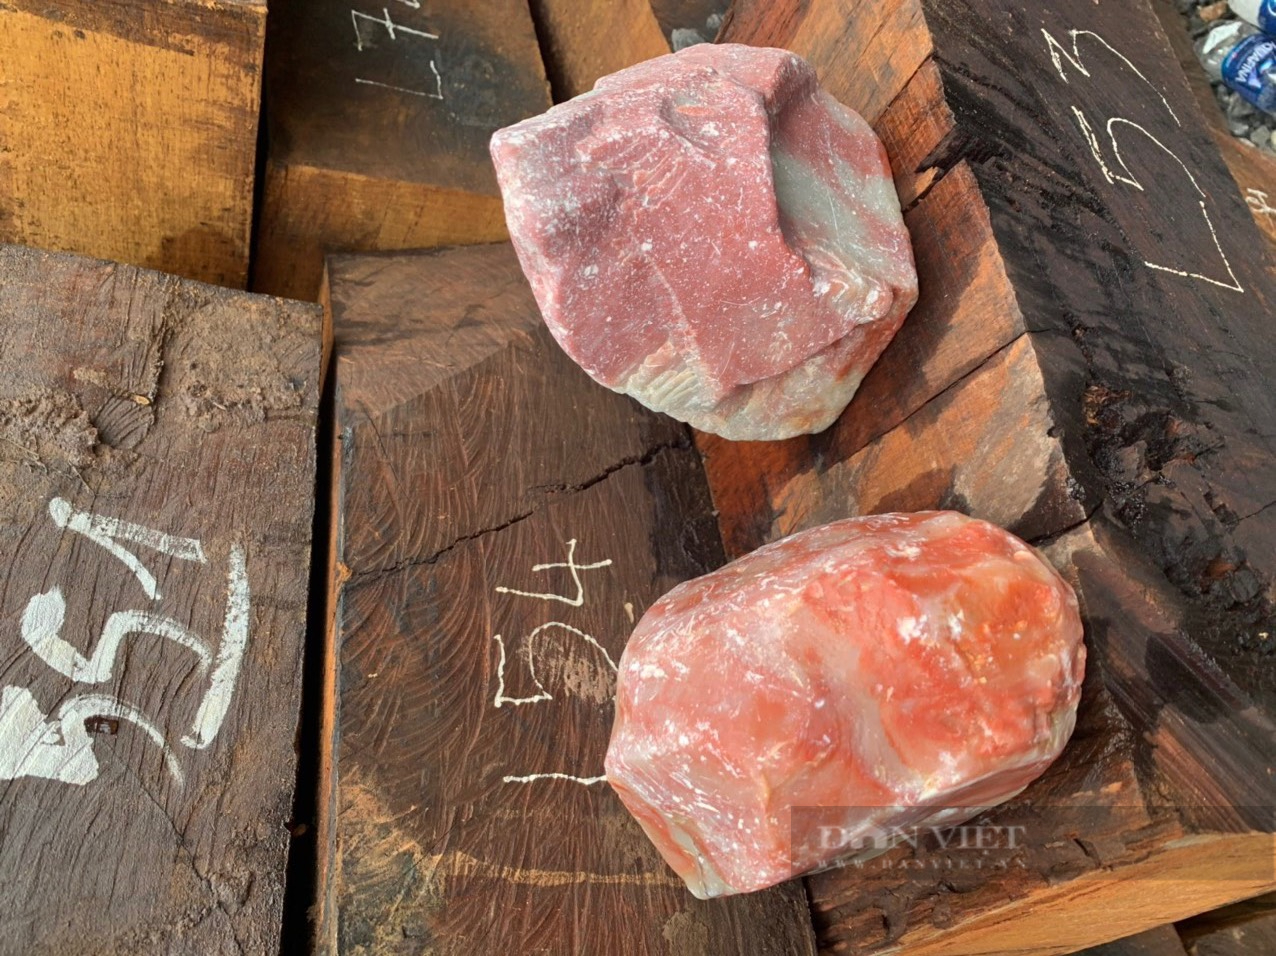 Khởi tố vụ án buôn lậu gỗ, đá ở Quảng Trị - Ảnh 2.